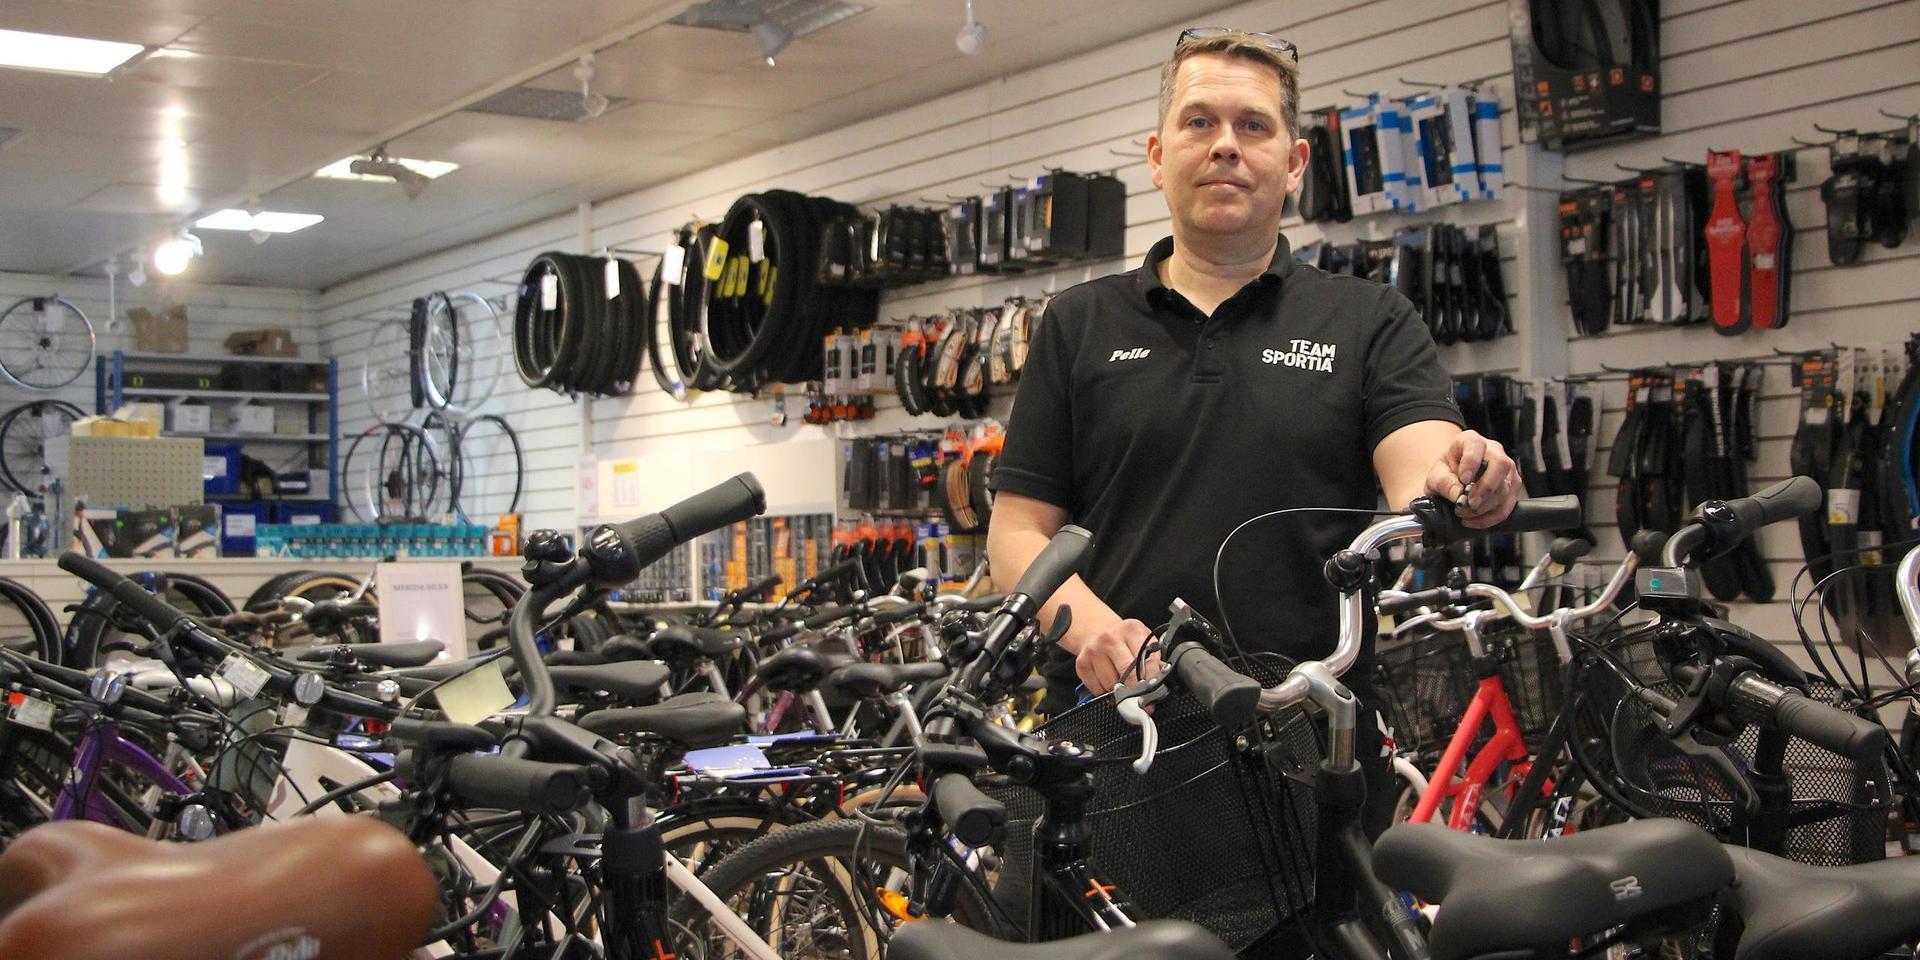 Det blir svårare och svårare att få fram cyklar, menar Per Karlsson som driver Team Sportia i Stenungsund.